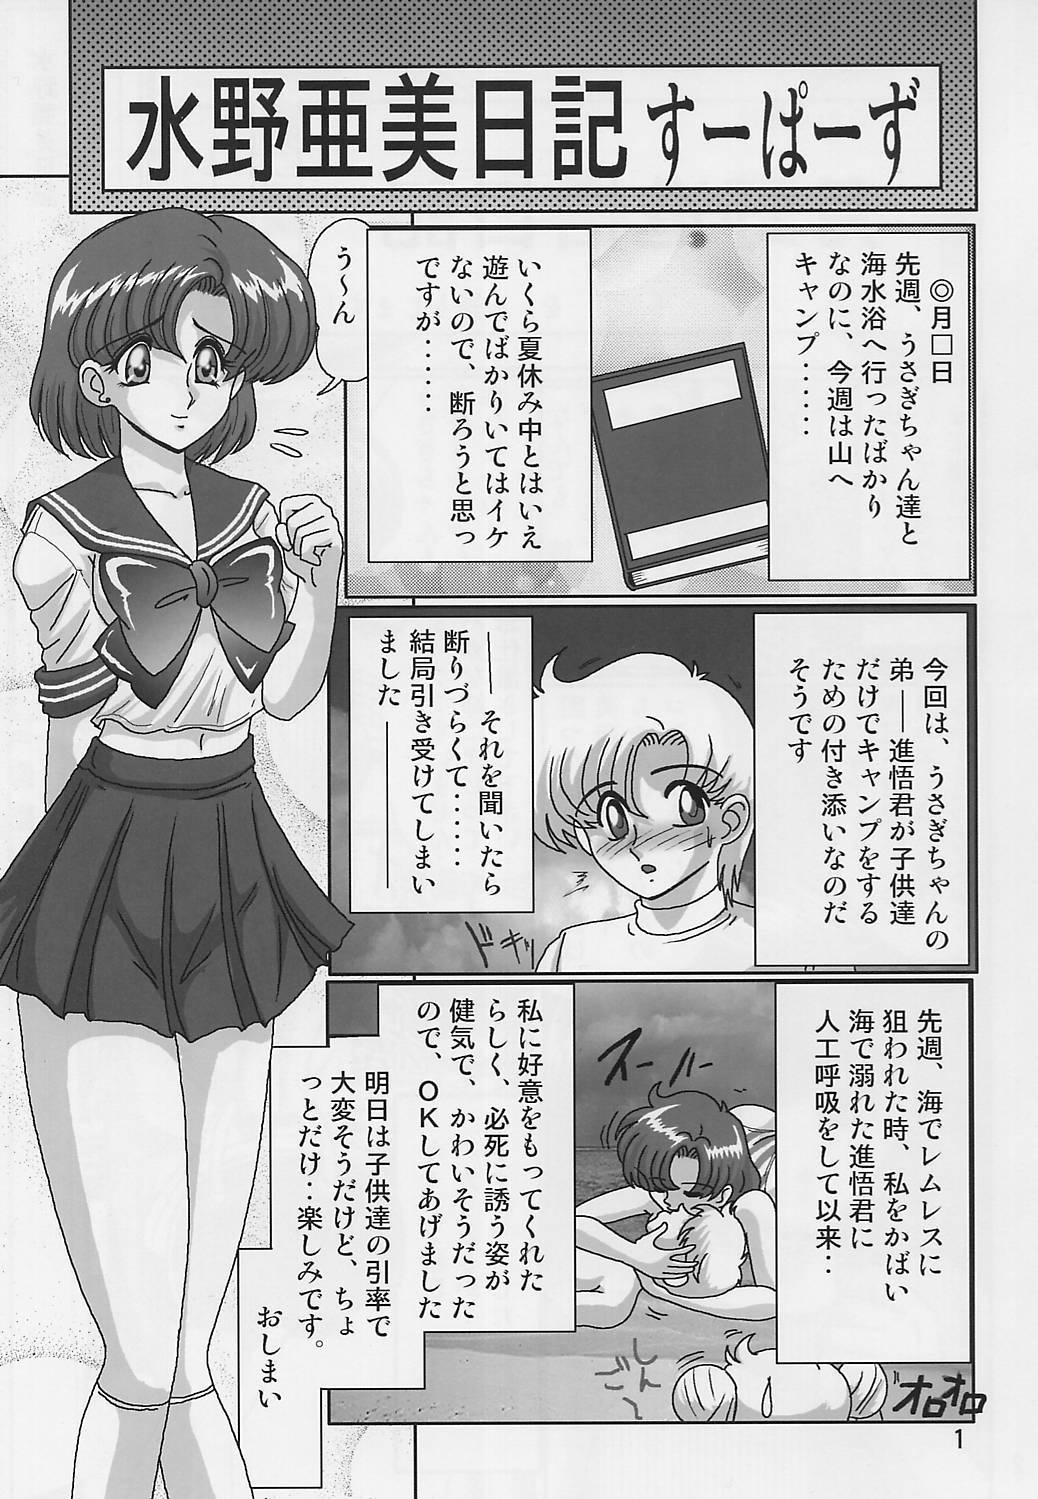 Beurette Mizuno Ami Nikki Supers - Sailor moon Amateurs - Page 3